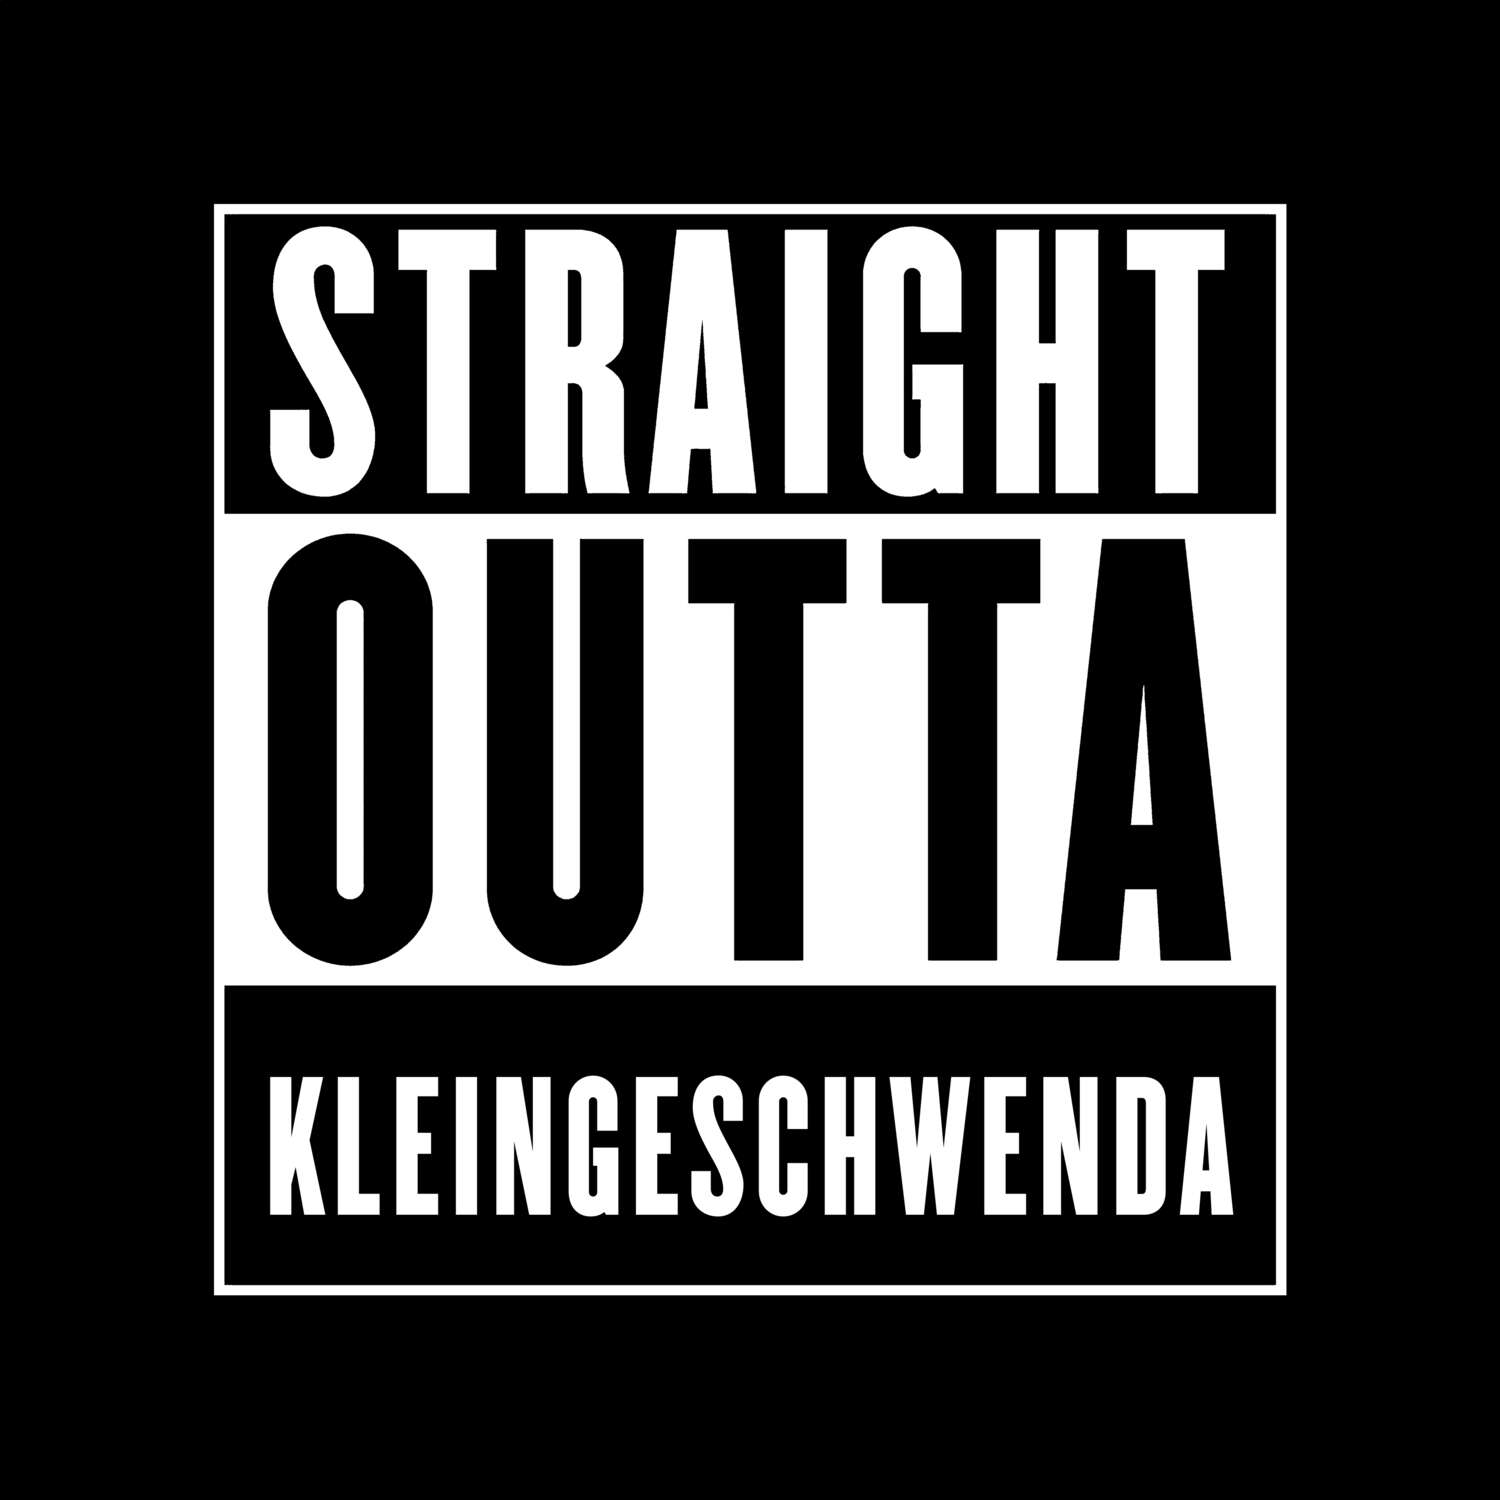 Kleingeschwenda T-Shirt »Straight Outta«